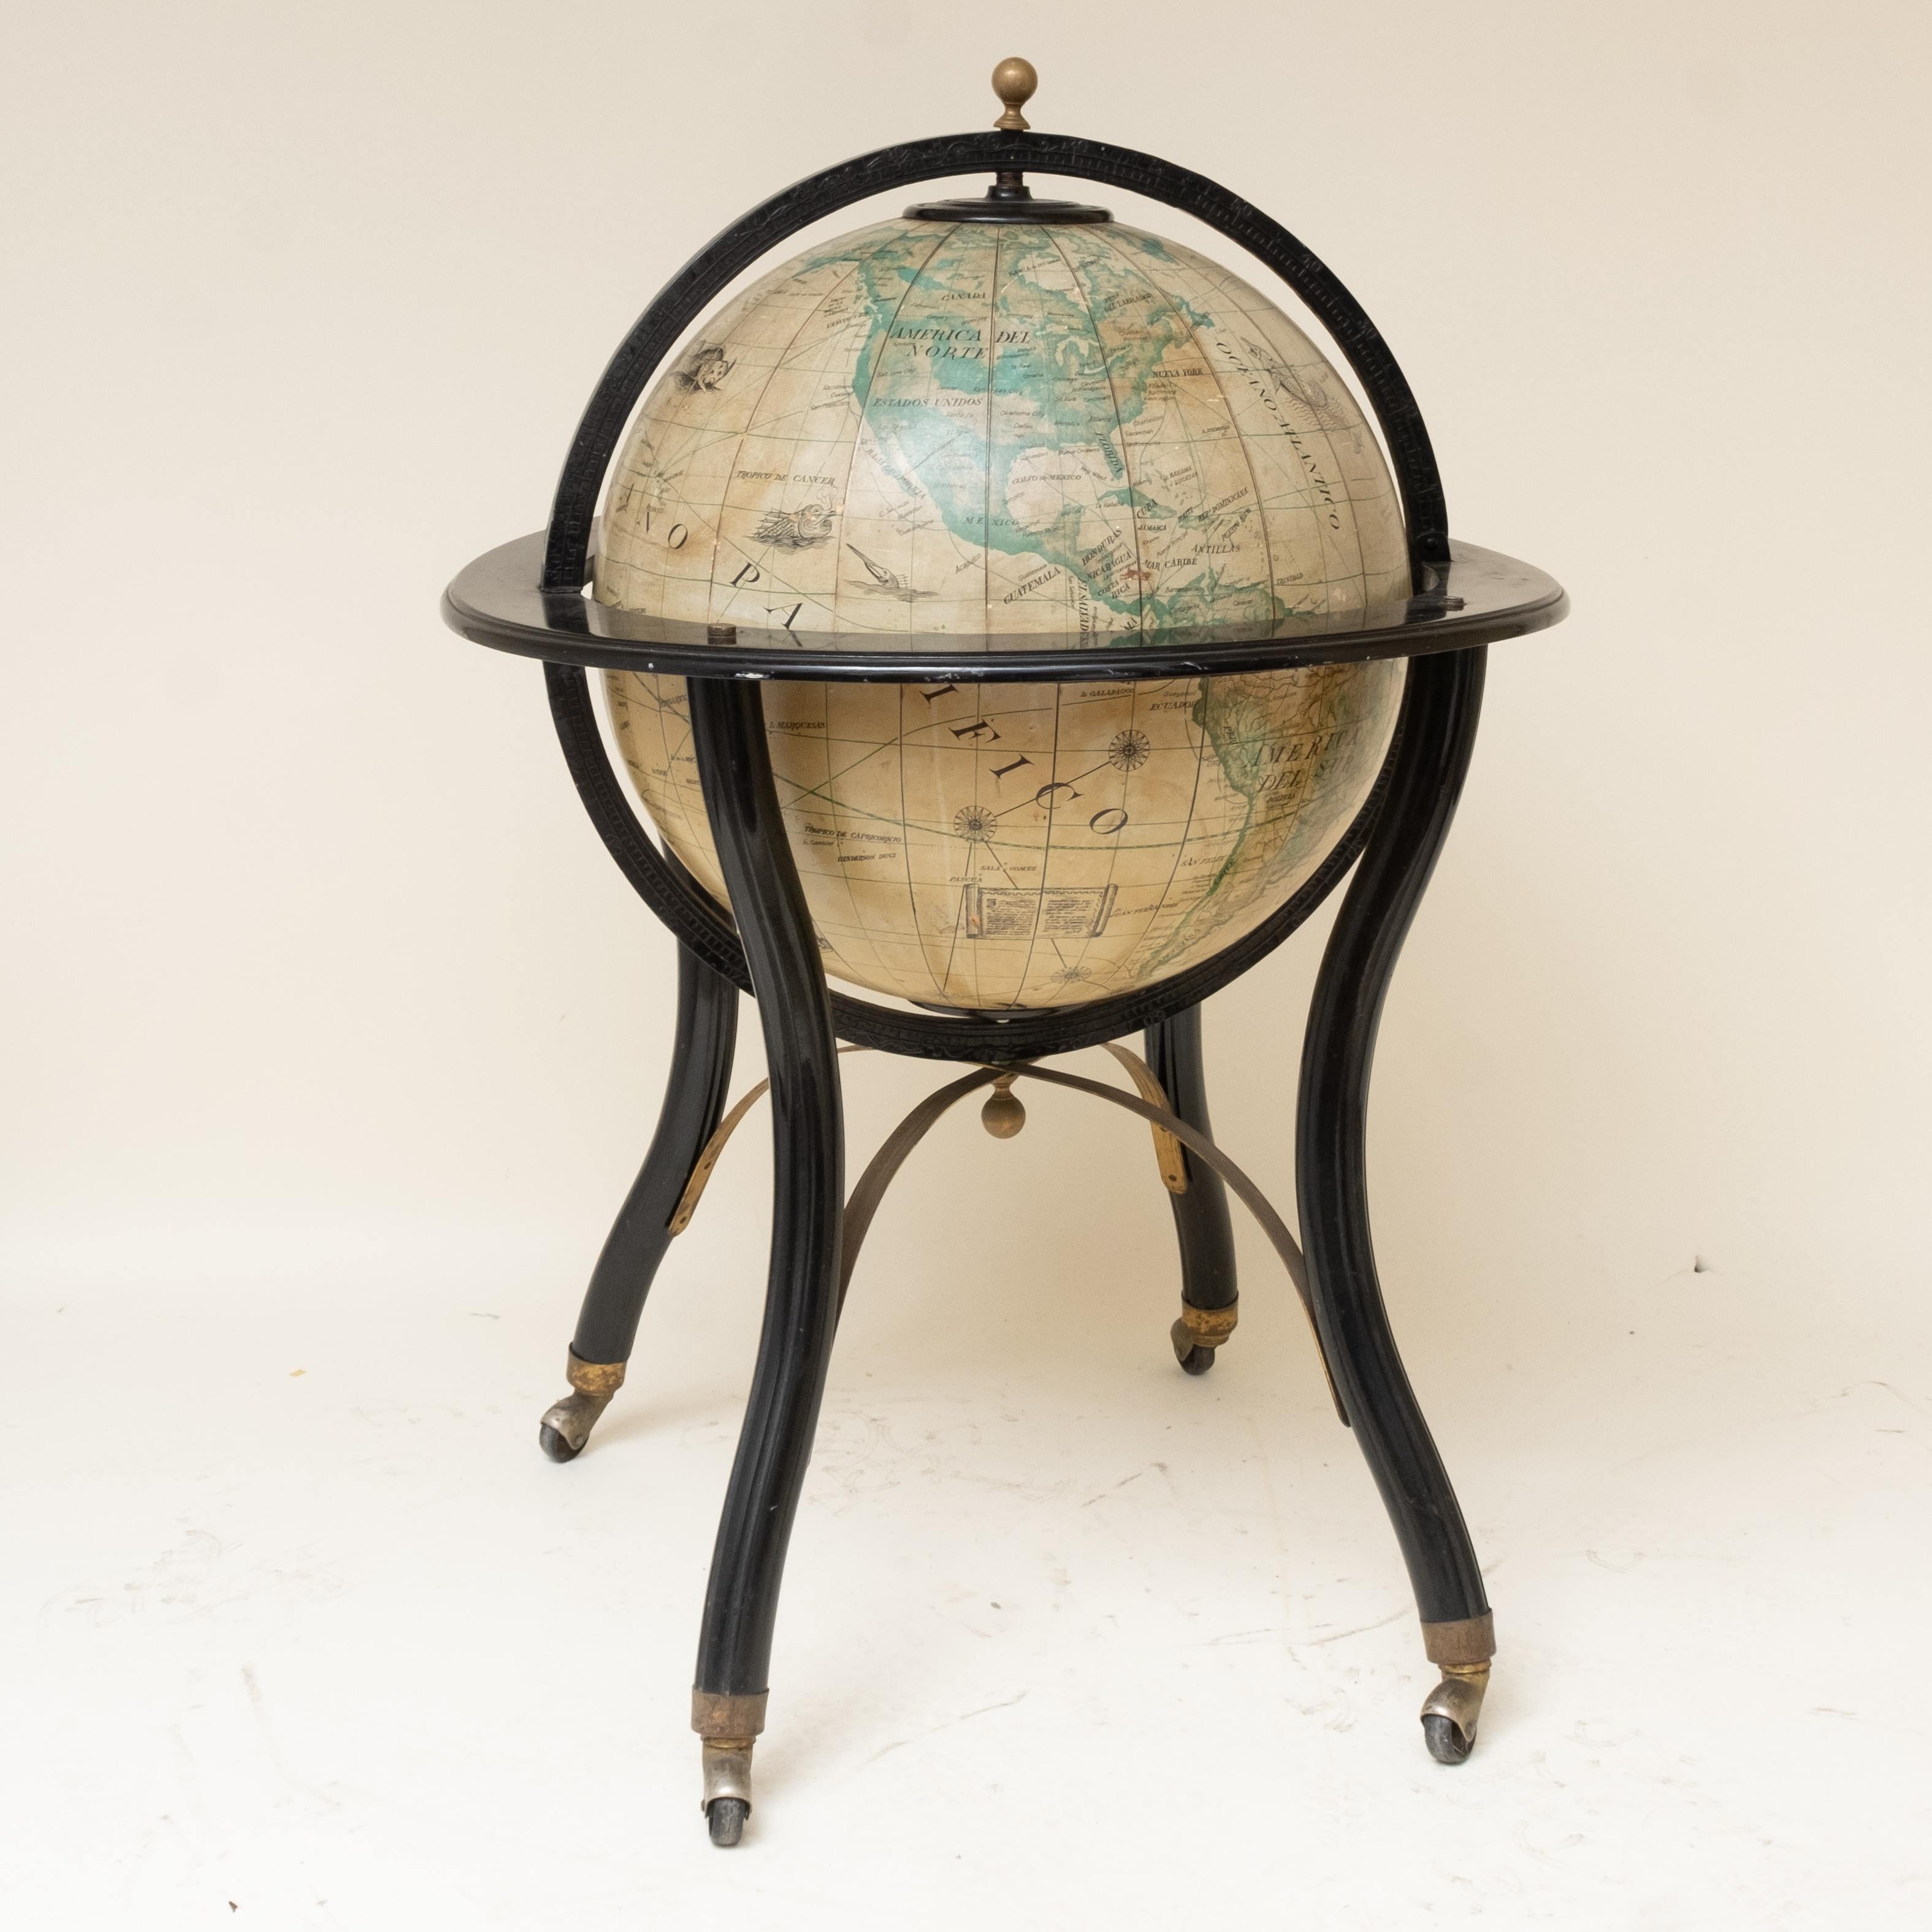 Vieux globe espagnol. Fabricant identifié mais de façon illisible - voir photo. Le globe est monté dans un cadre en bois ébonisé, en laiton et en acier